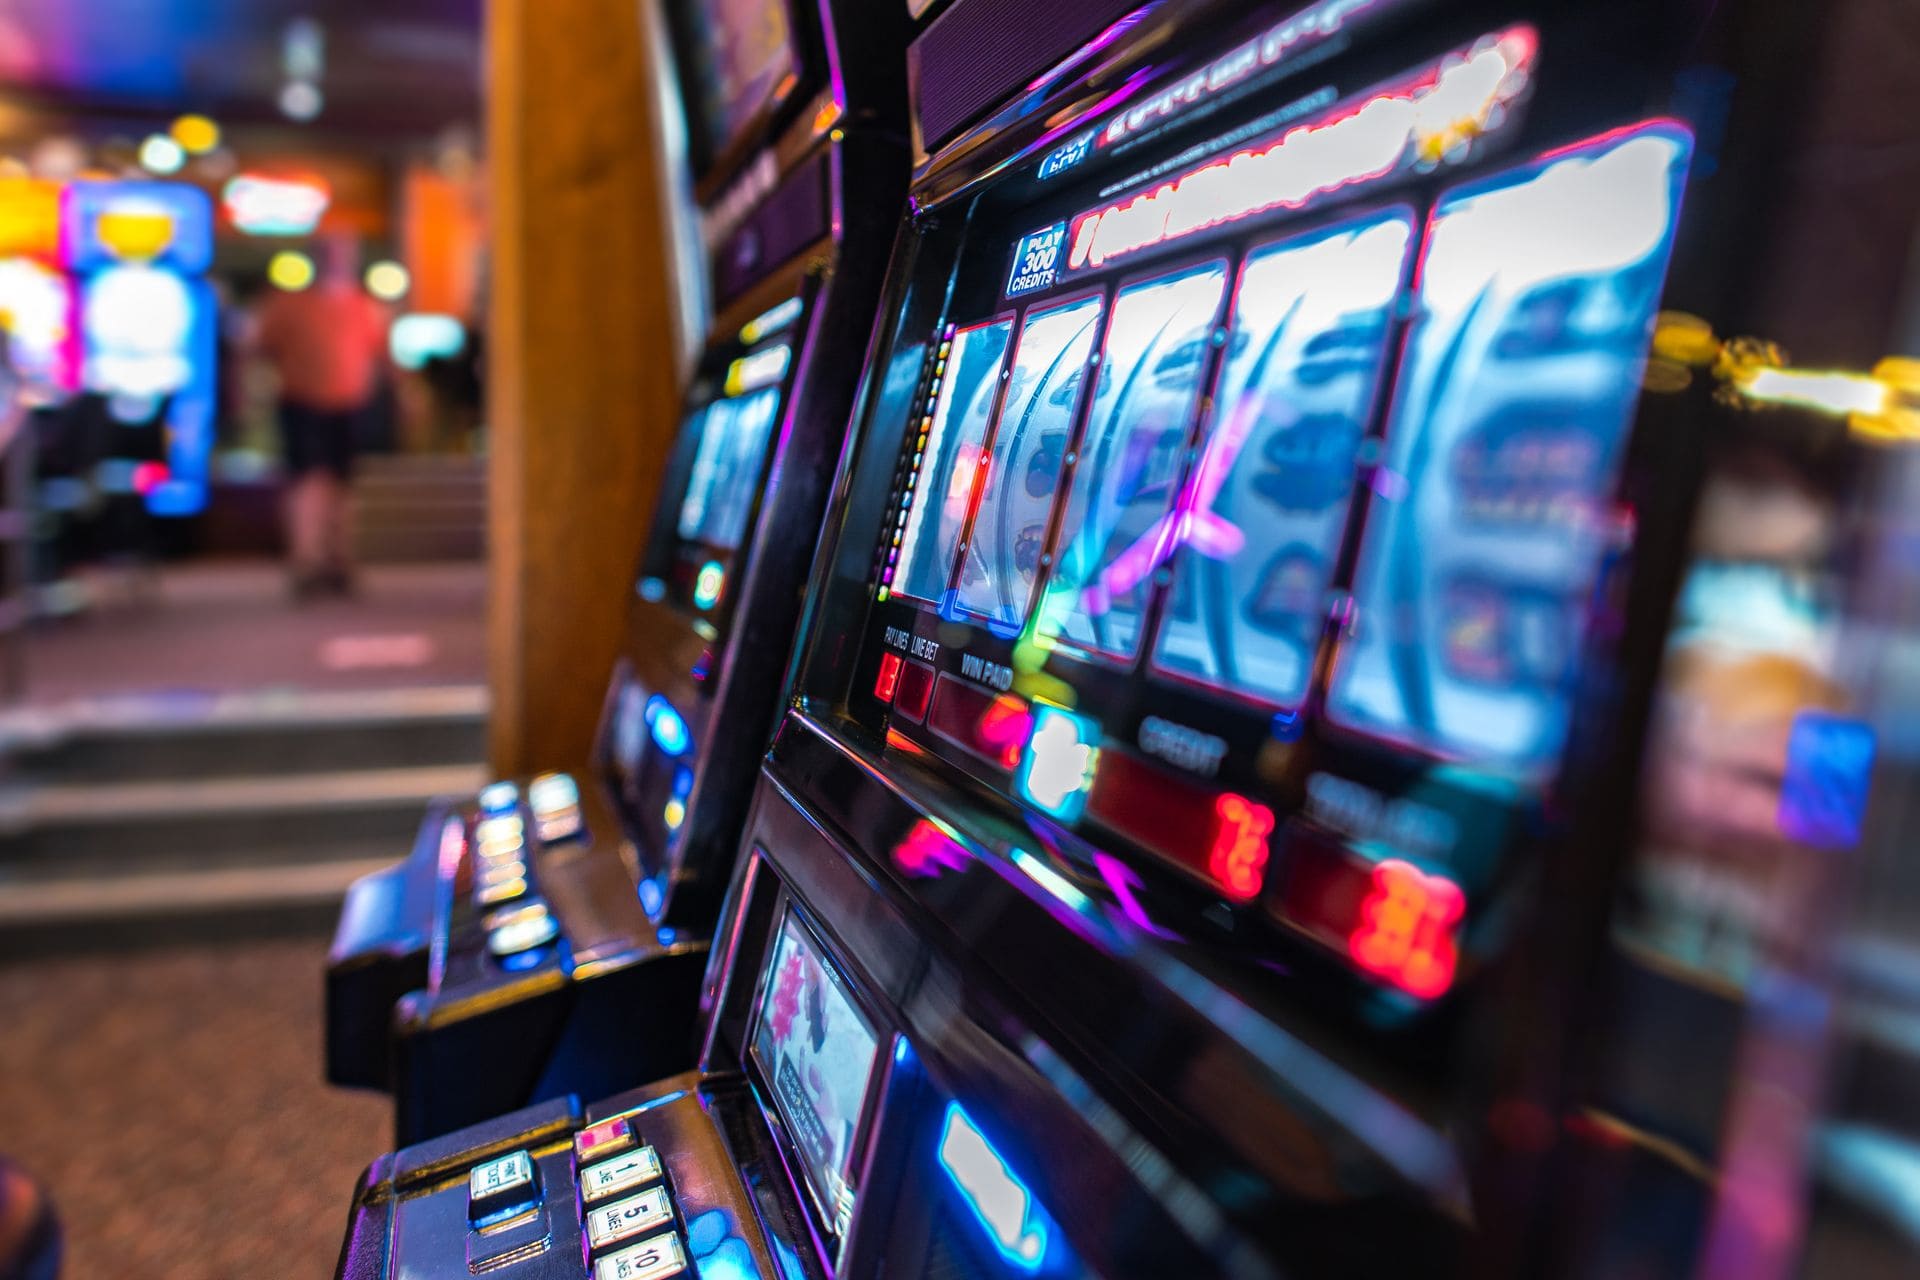 Casino Slots Machines